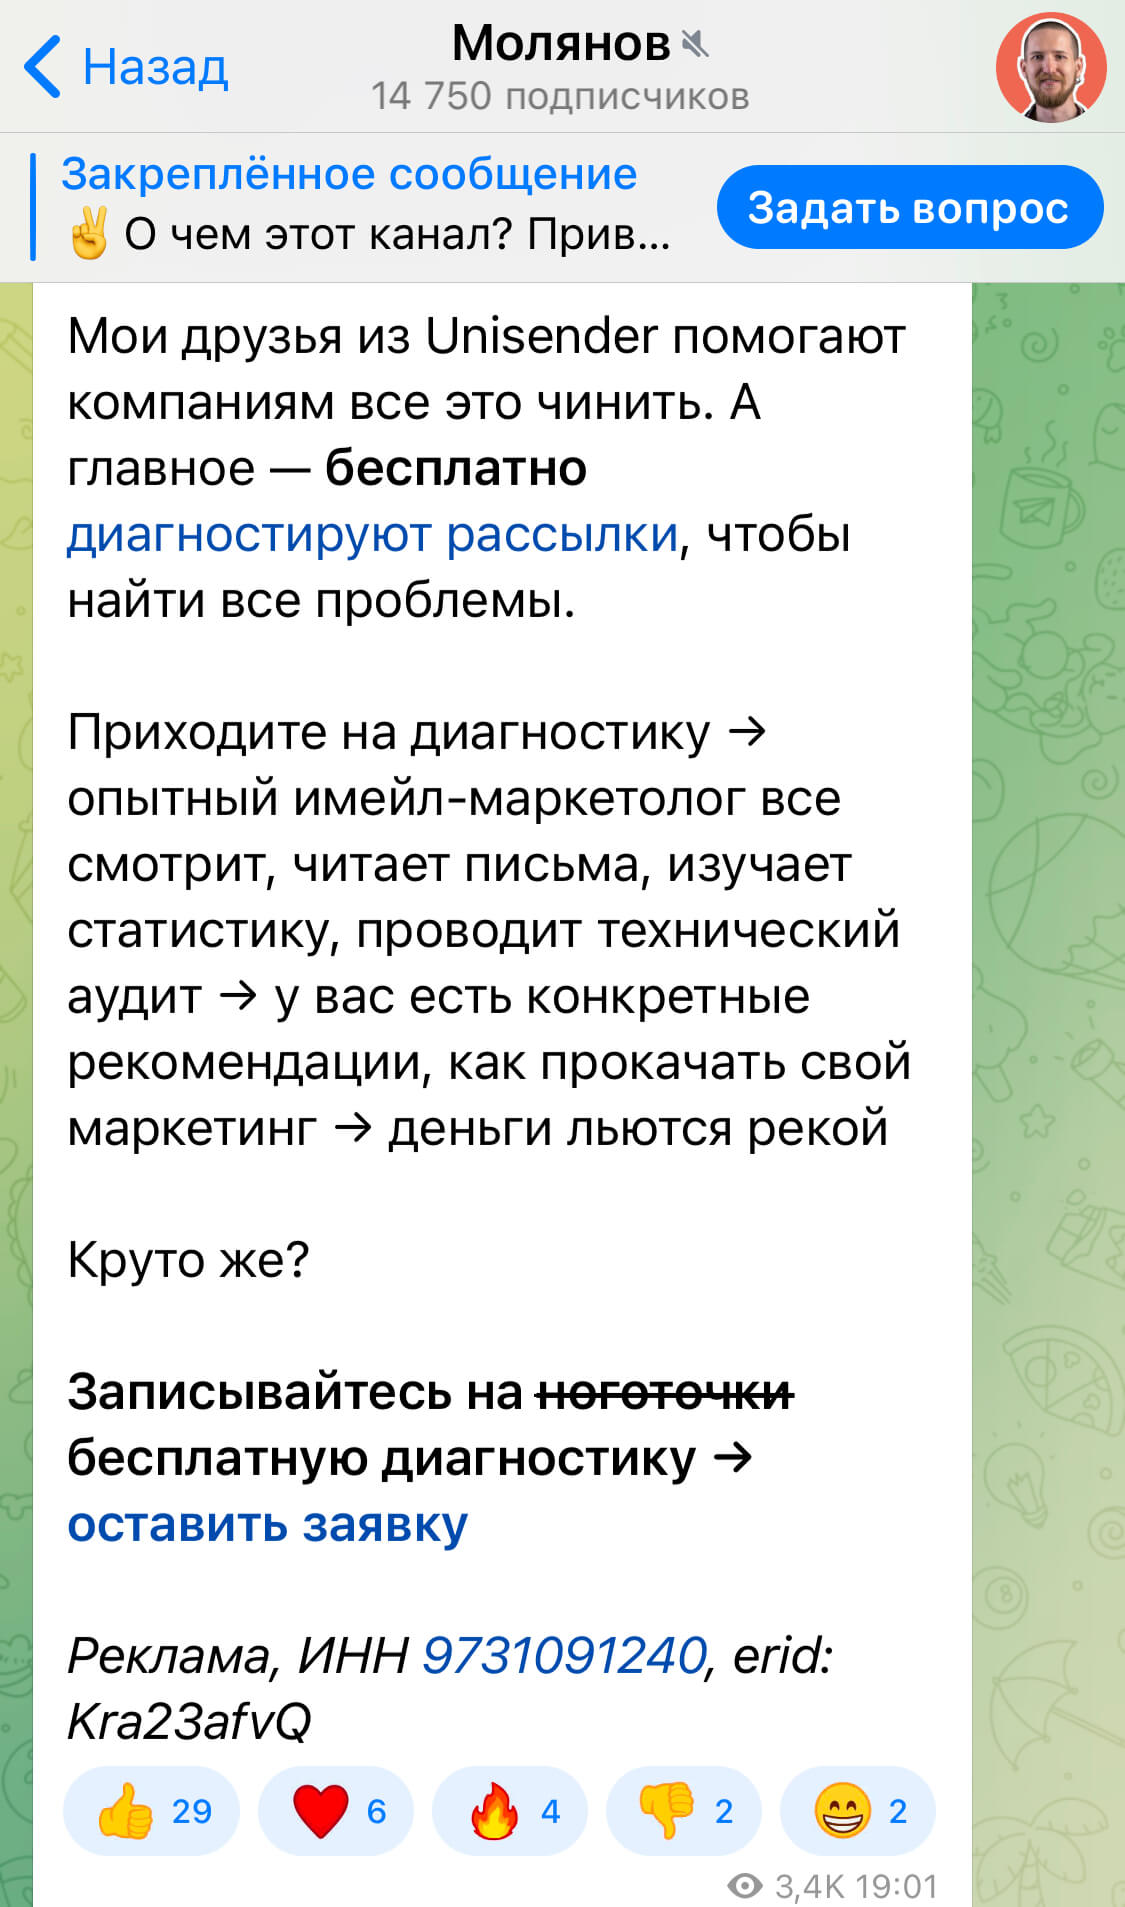 реклама в Telegram